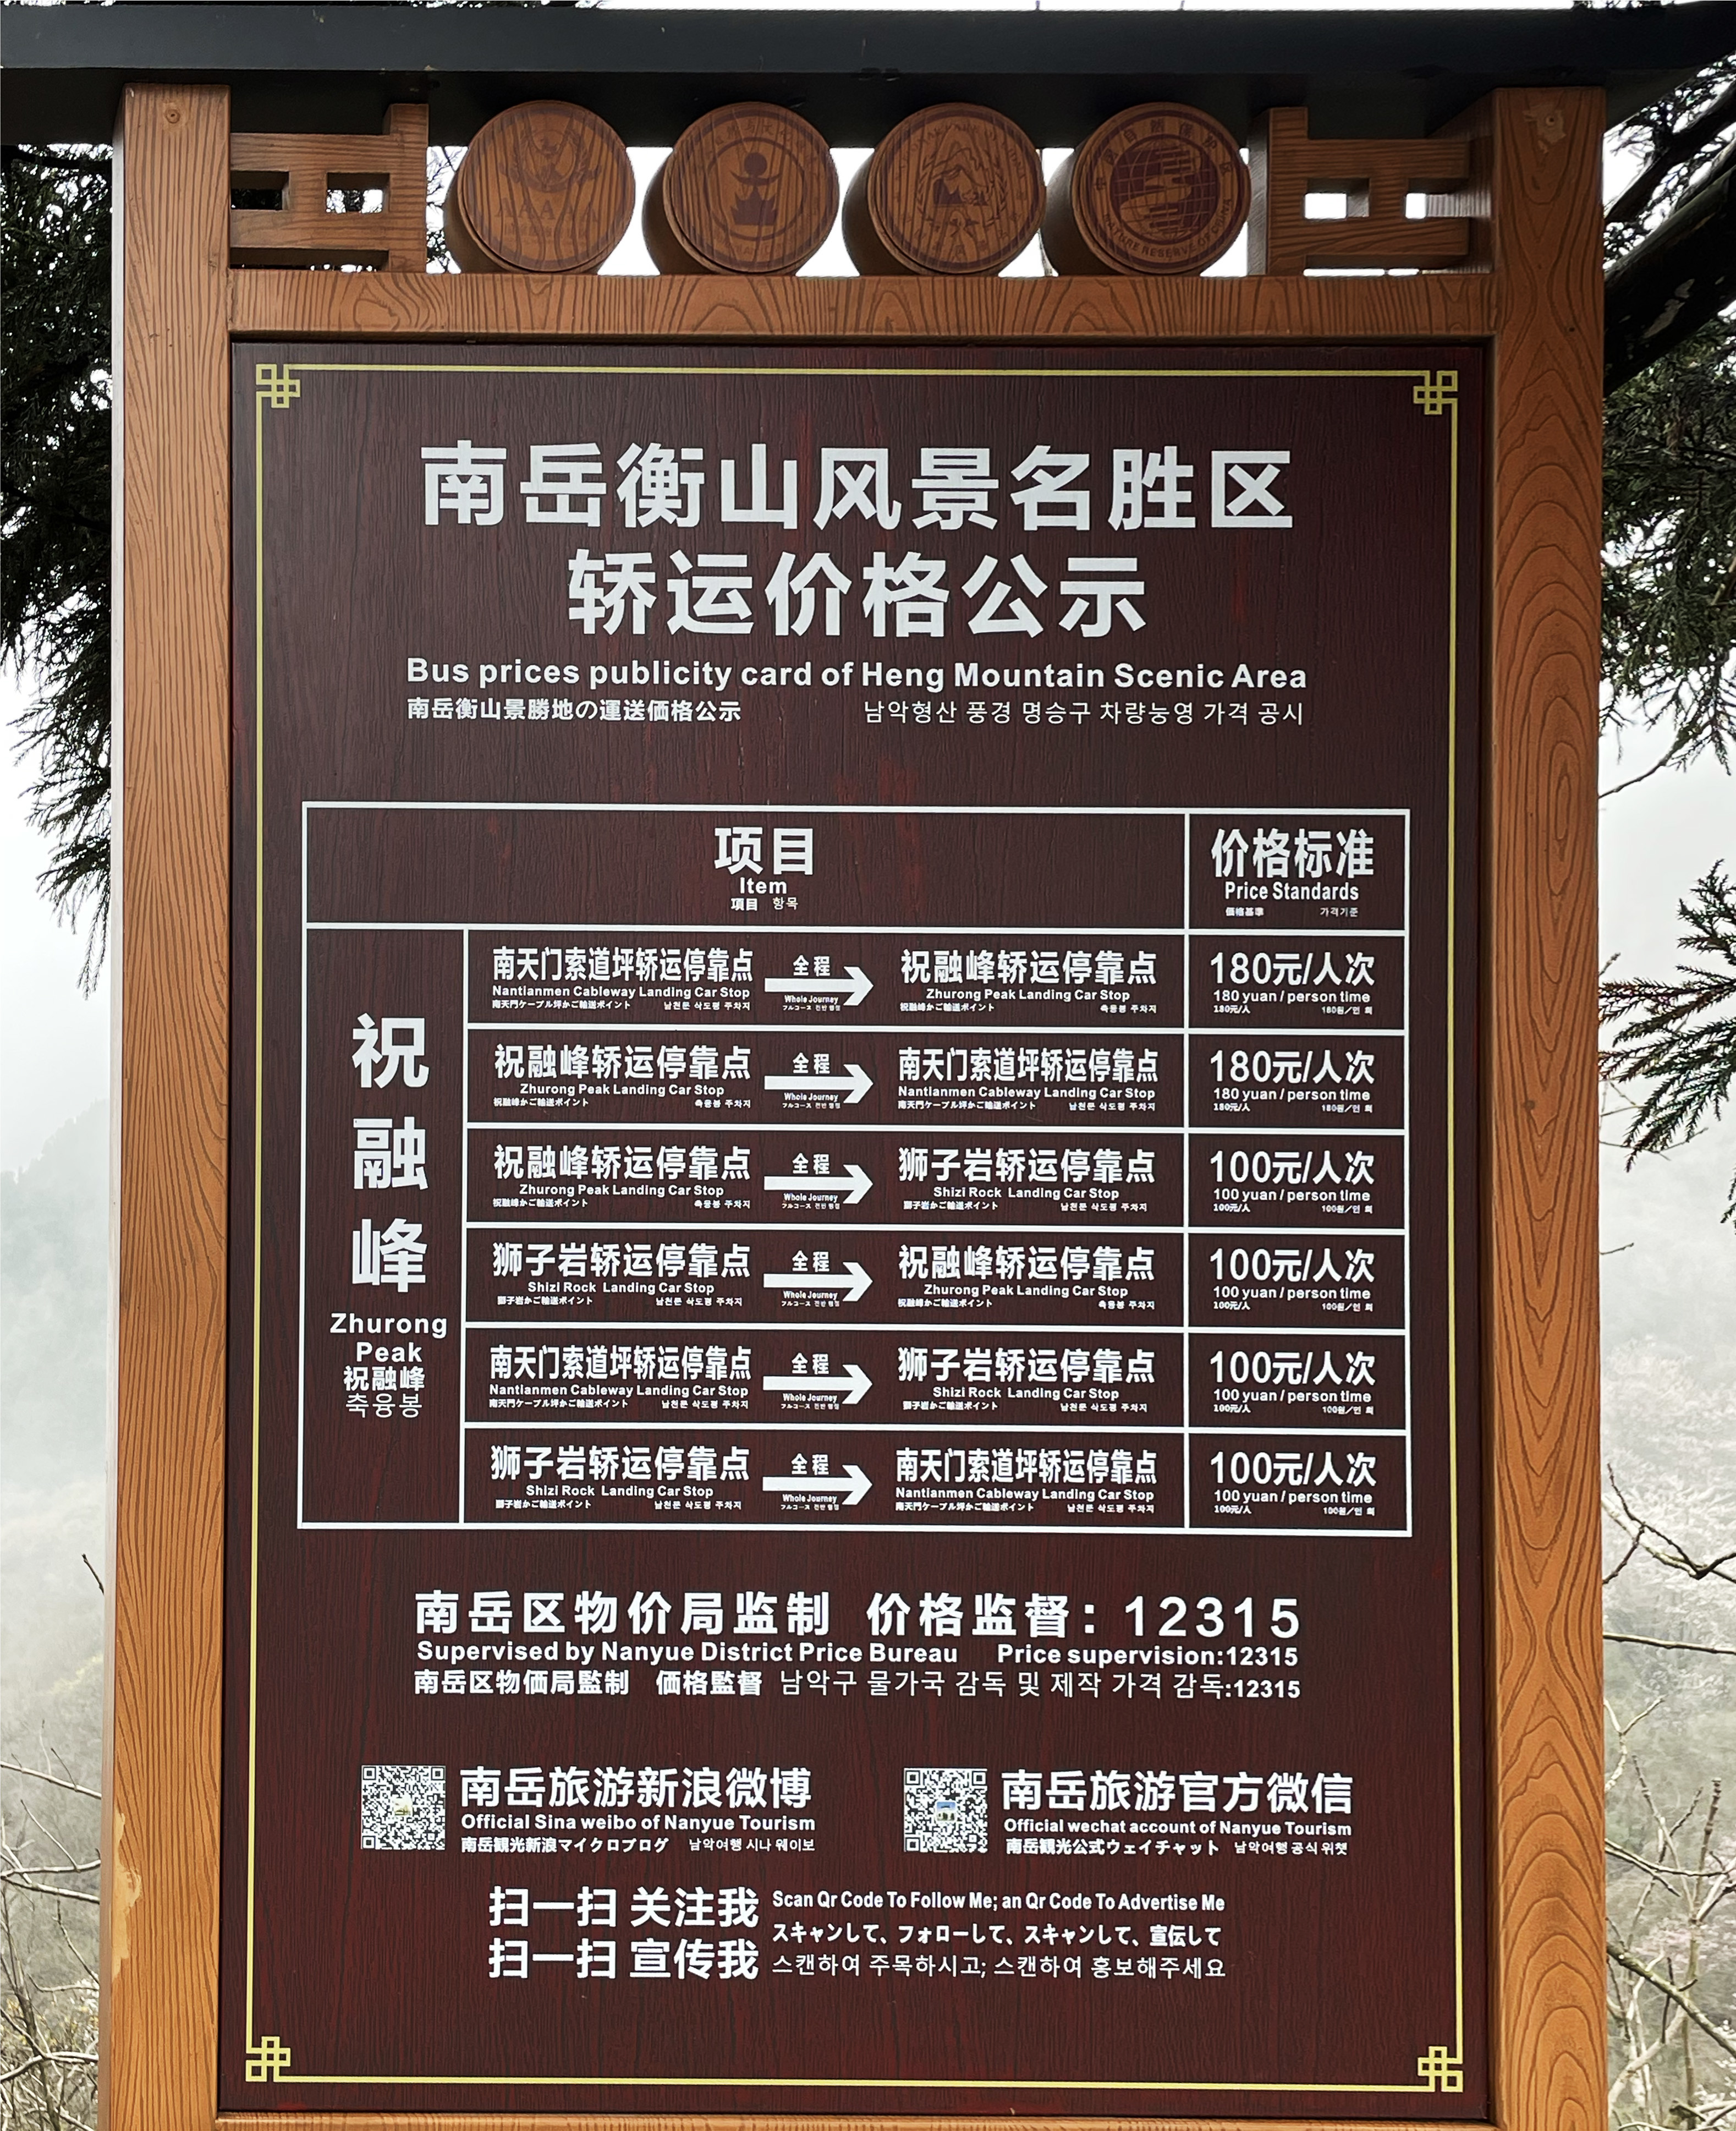 策马奔腾入西藏,15省中华大地全景攻略第三集南岳衡山